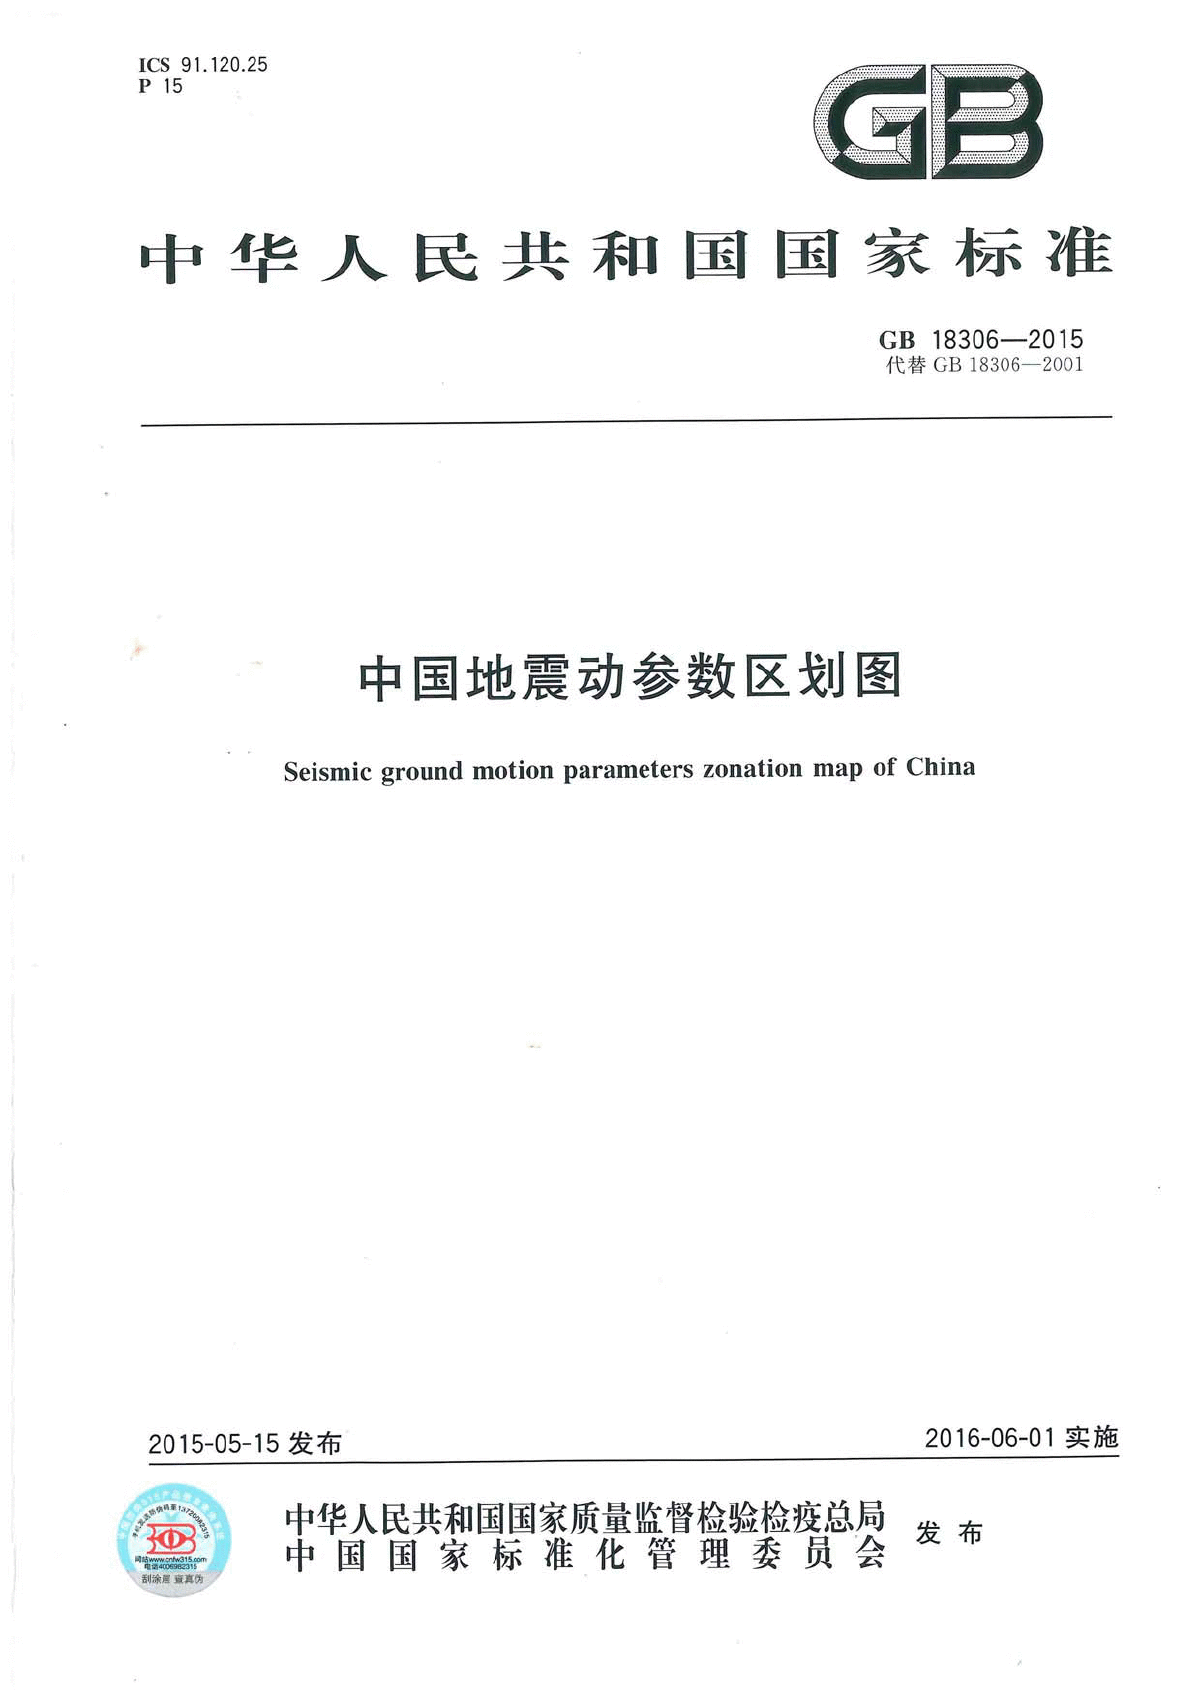 最新版GB18306-2015中国地震动参数区划图-图一